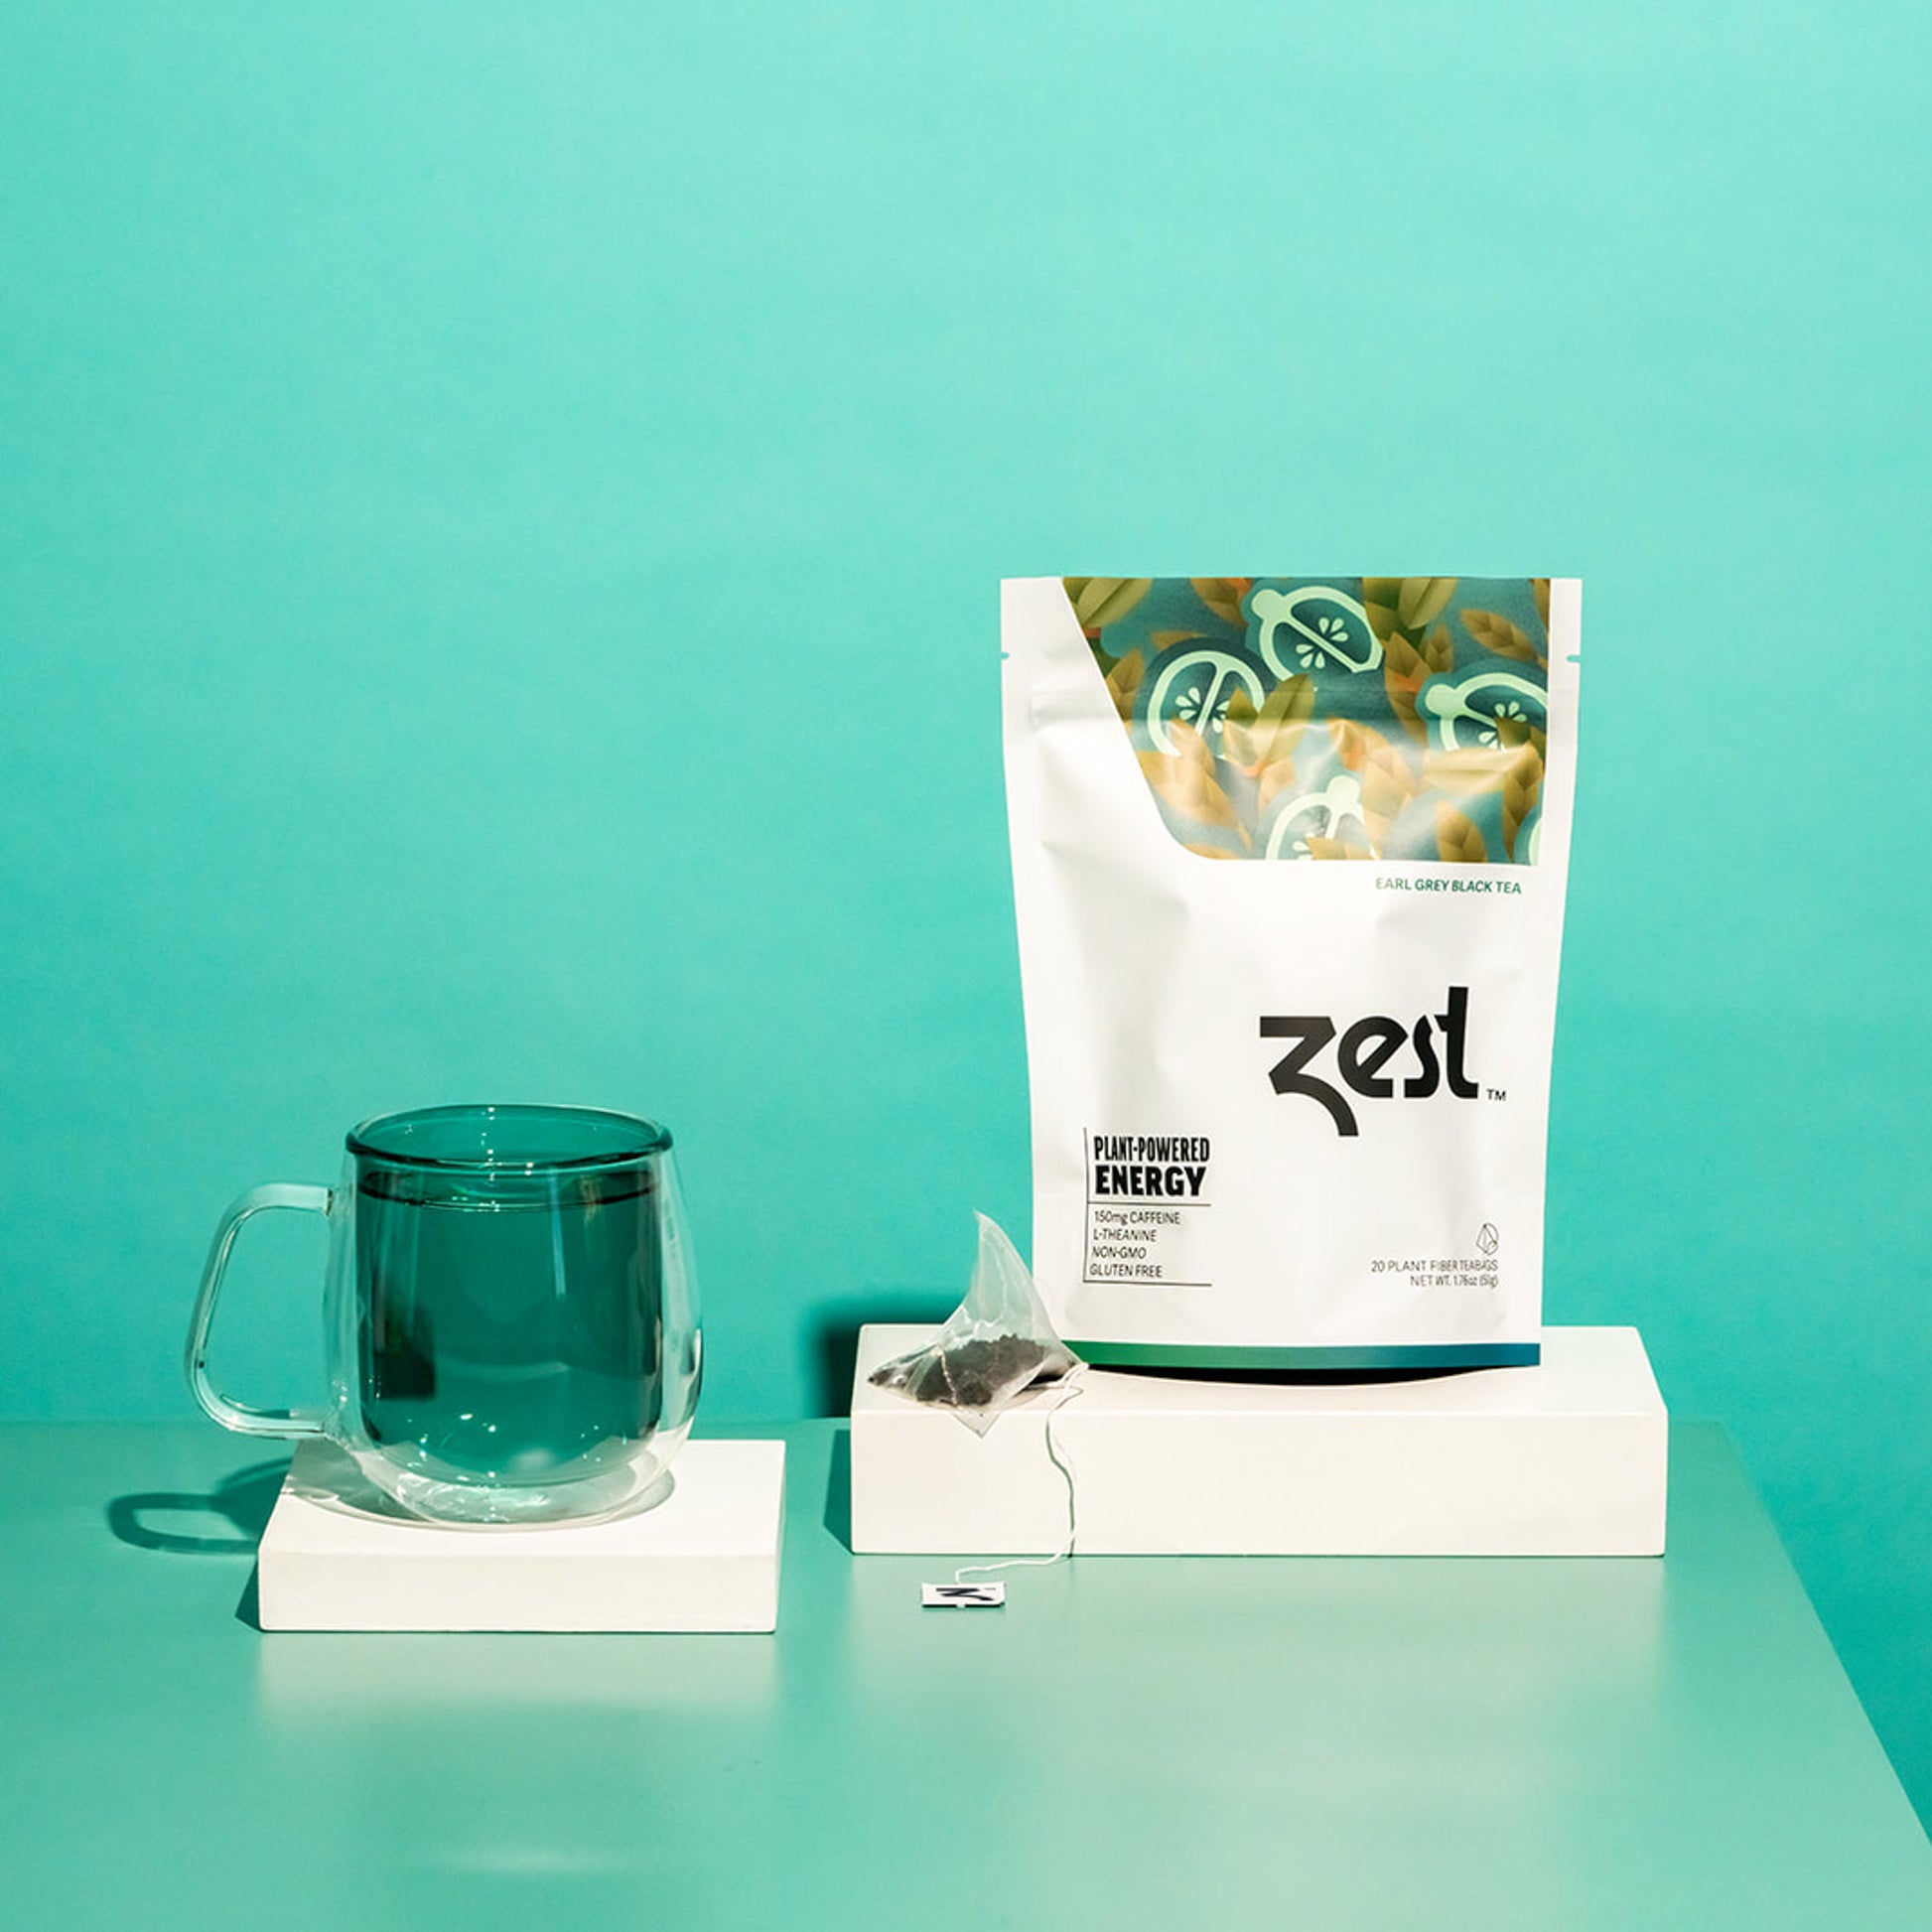 Zest Earl Grey Plant-Powered Energy - High Caffeine Tea Bags